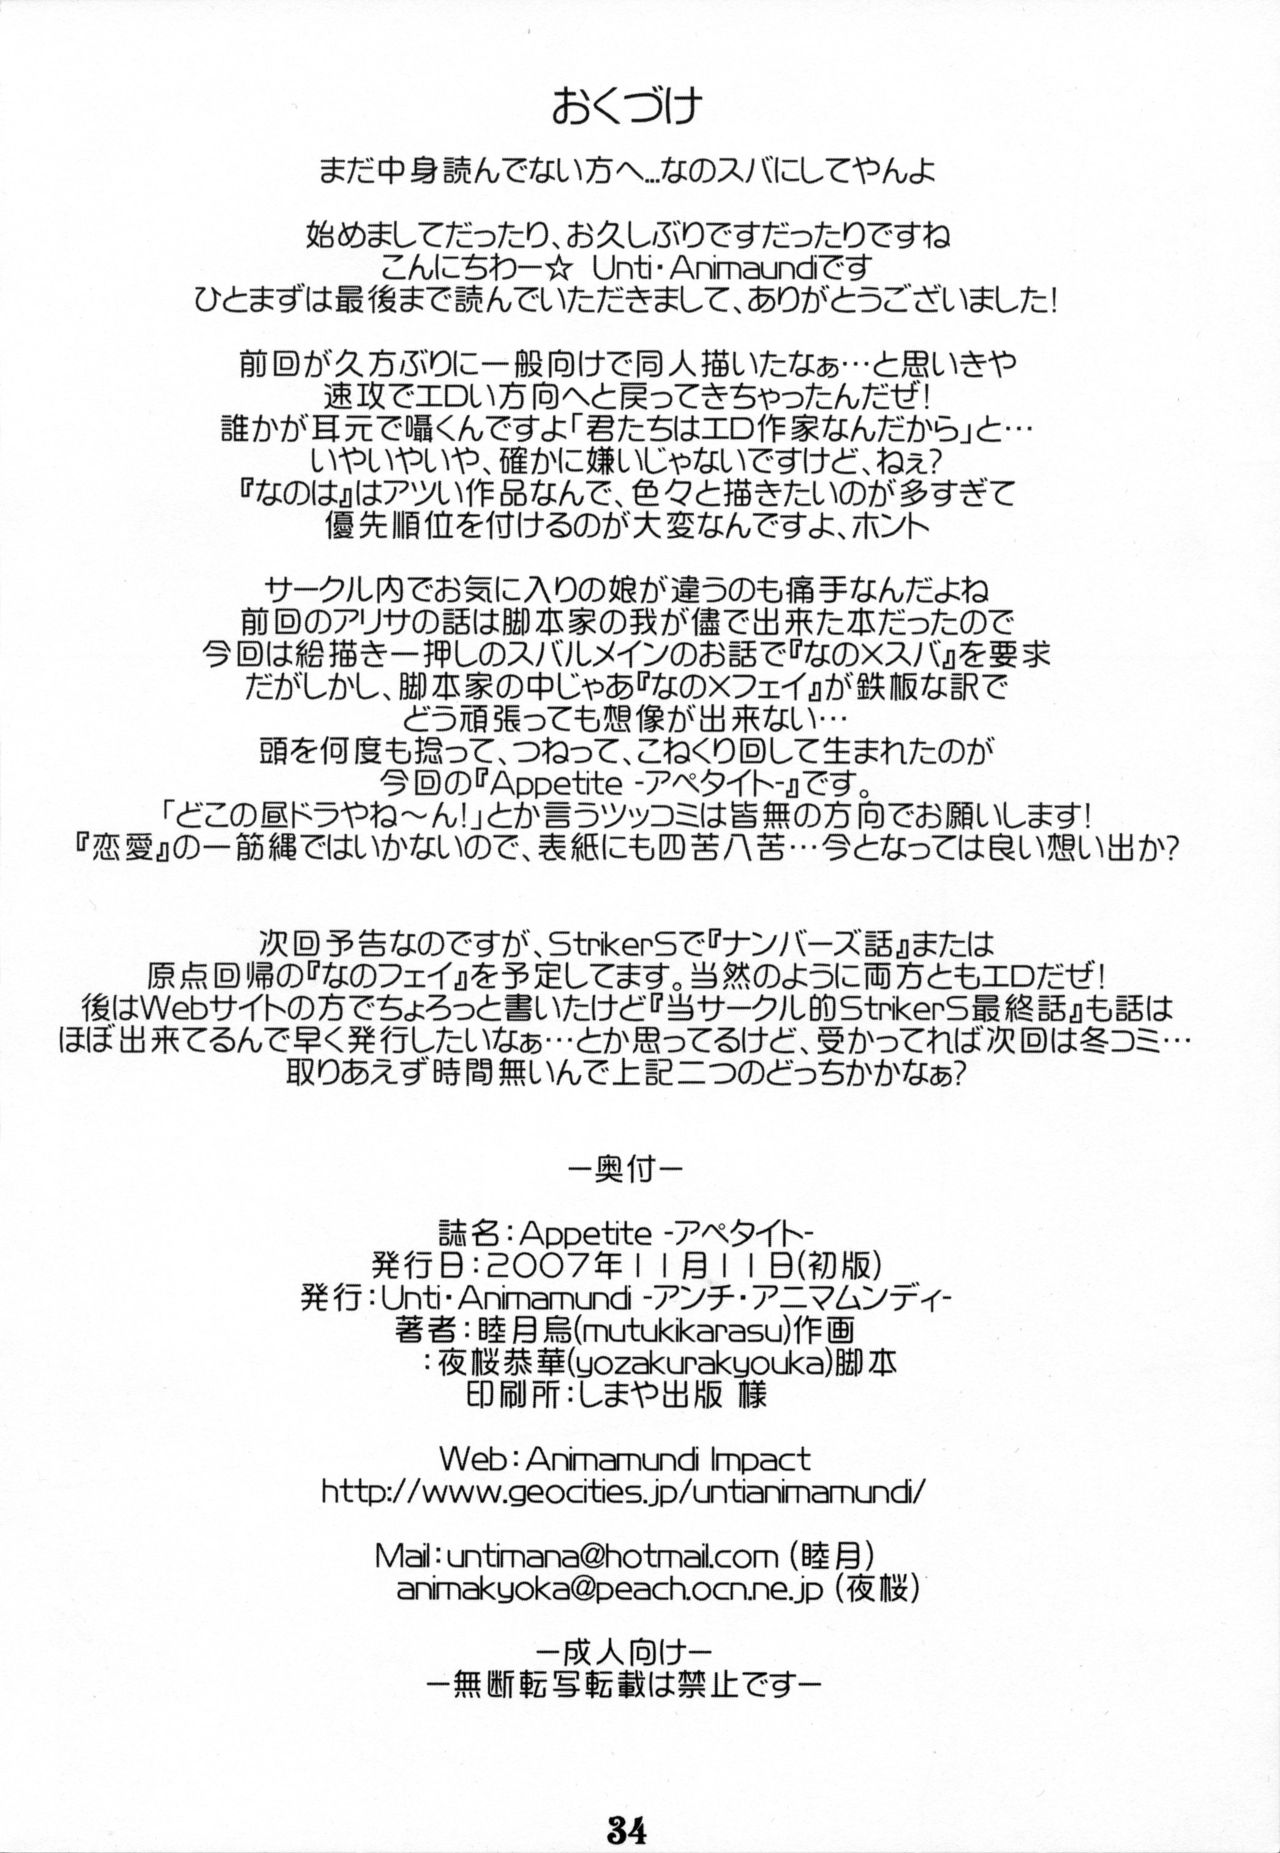 (Lyrical Magical 3) [Unti・Animamundi (Yozakura Kyouka, Mutsuki Karasu)] Appetite (Mahou Shoujo Lyrical Nanoha) (リリマジ3) [Unti・Animamundi (夜桜恭華、睦月烏)] Appetite (魔法少女リリカルなのは)